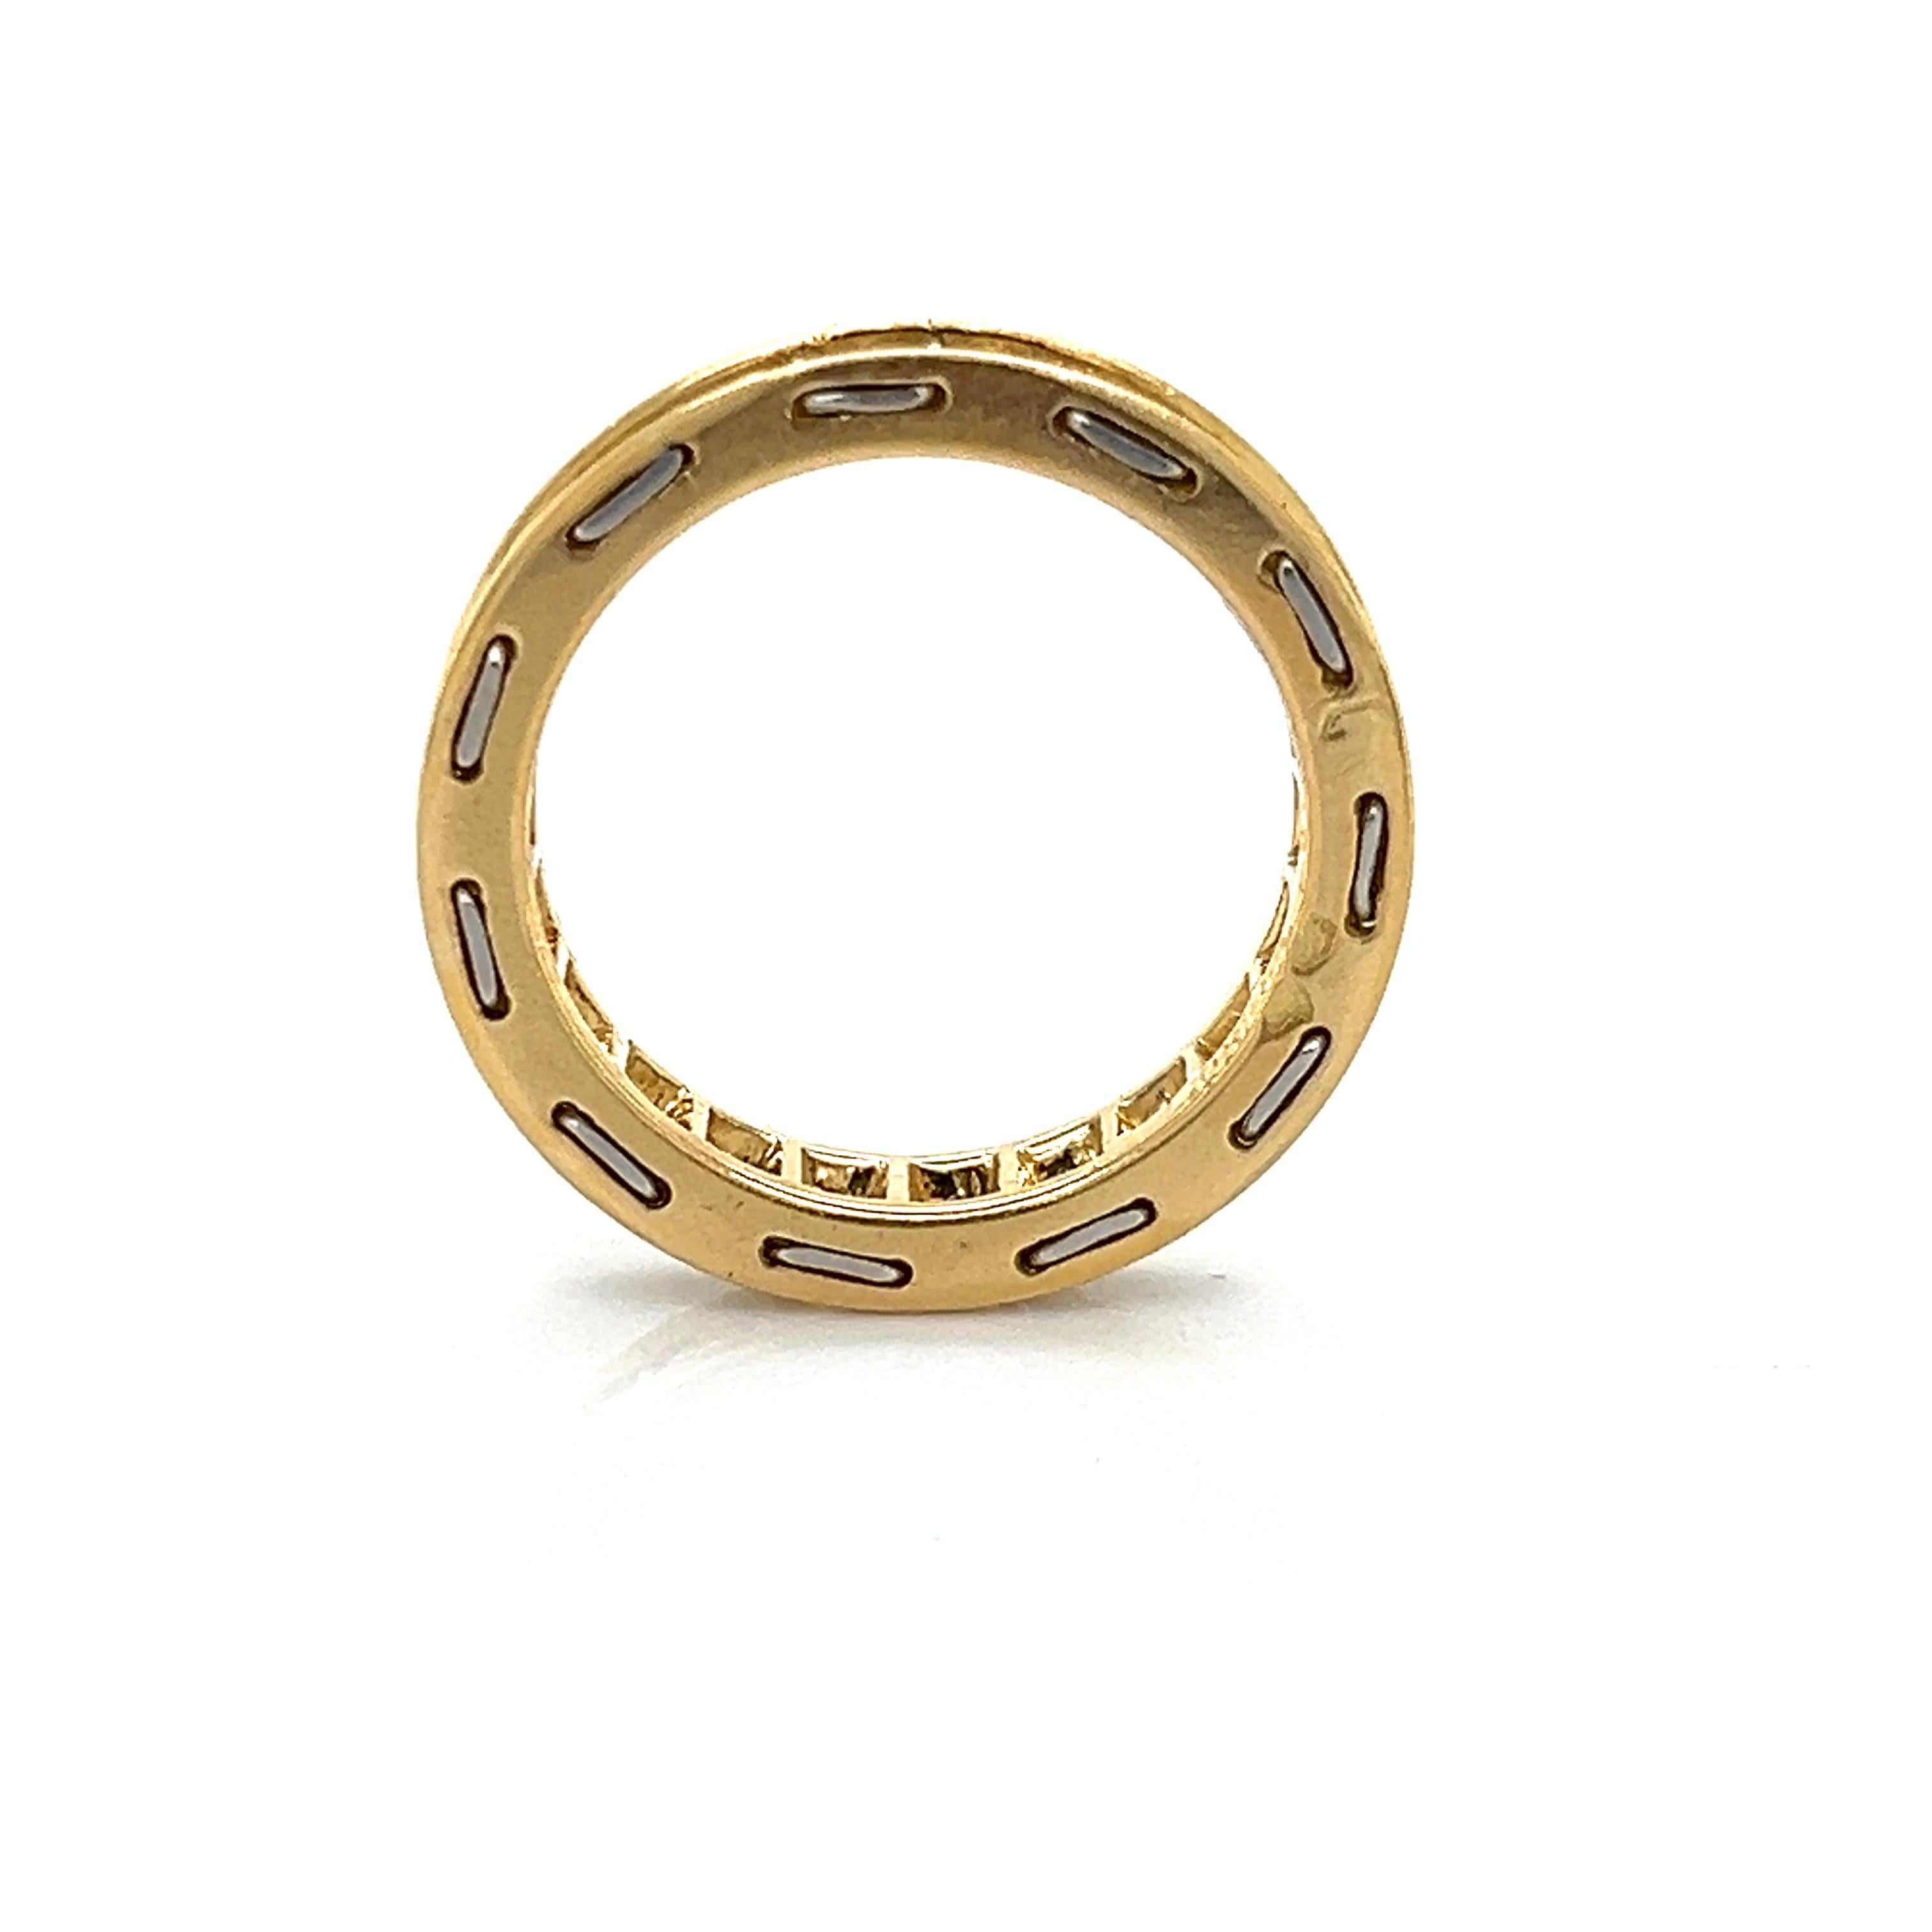 Schöner Ring des famosen Designers Cartier. Der Ring ist aus 18 Karat Gelbgold und Platin gefertigt und mit zweiundzwanzig runden Diamanten im Brillantschliff besetzt. Die Diamanten in diesem Design sind von weißer Farbe (E-F) und weisen eine